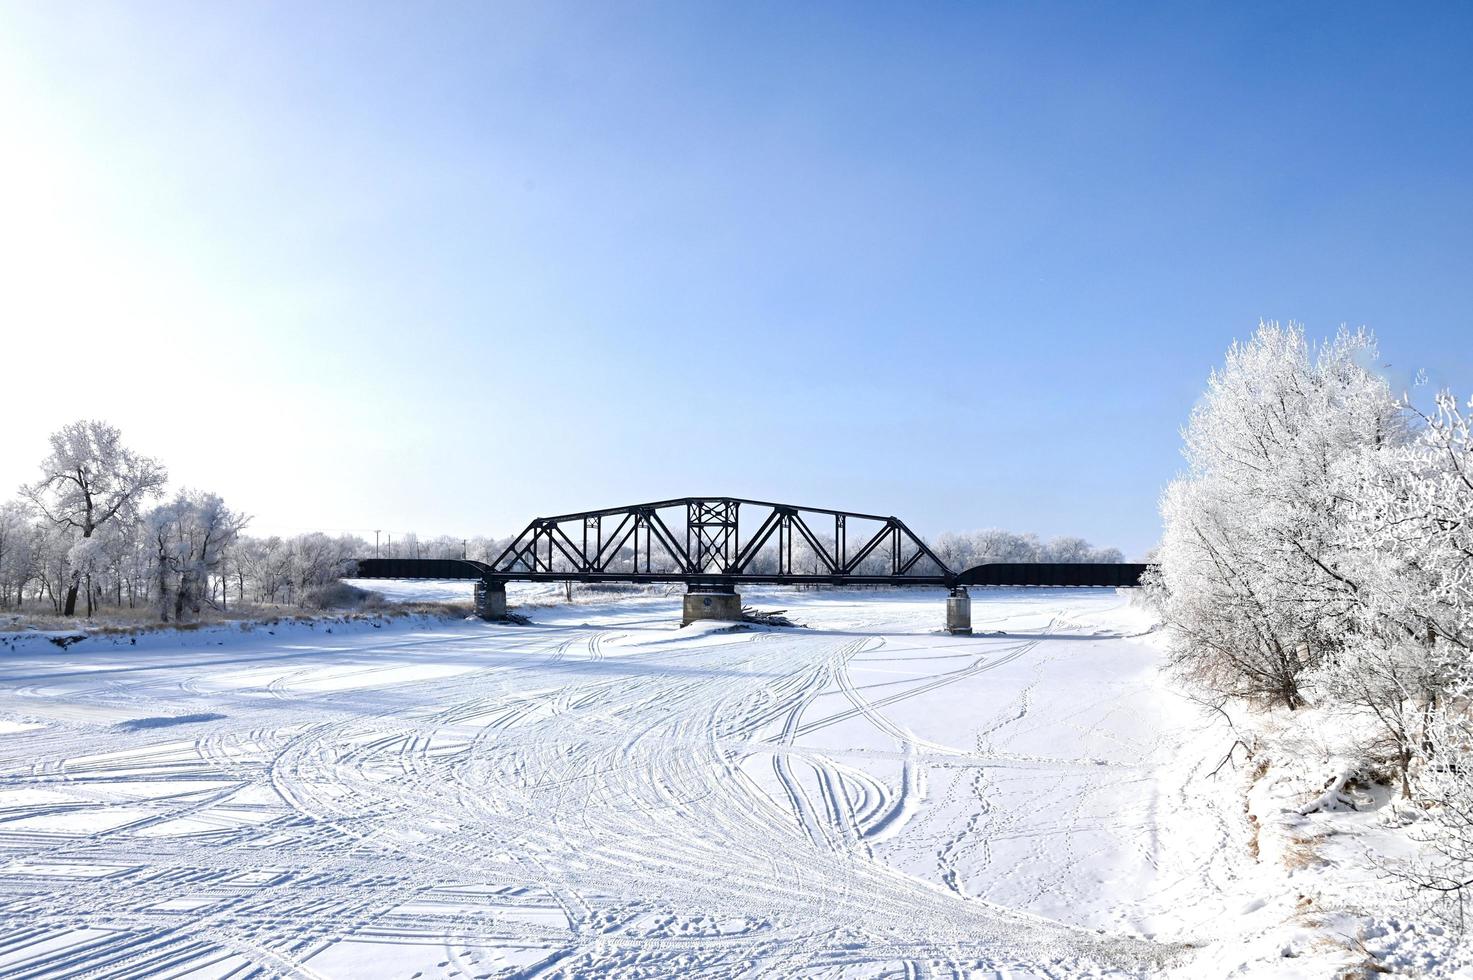 eine Eisenbahnbrücke über einen zugefrorenen Fluss mit frostbedeckten Bäumen am Ufer foto